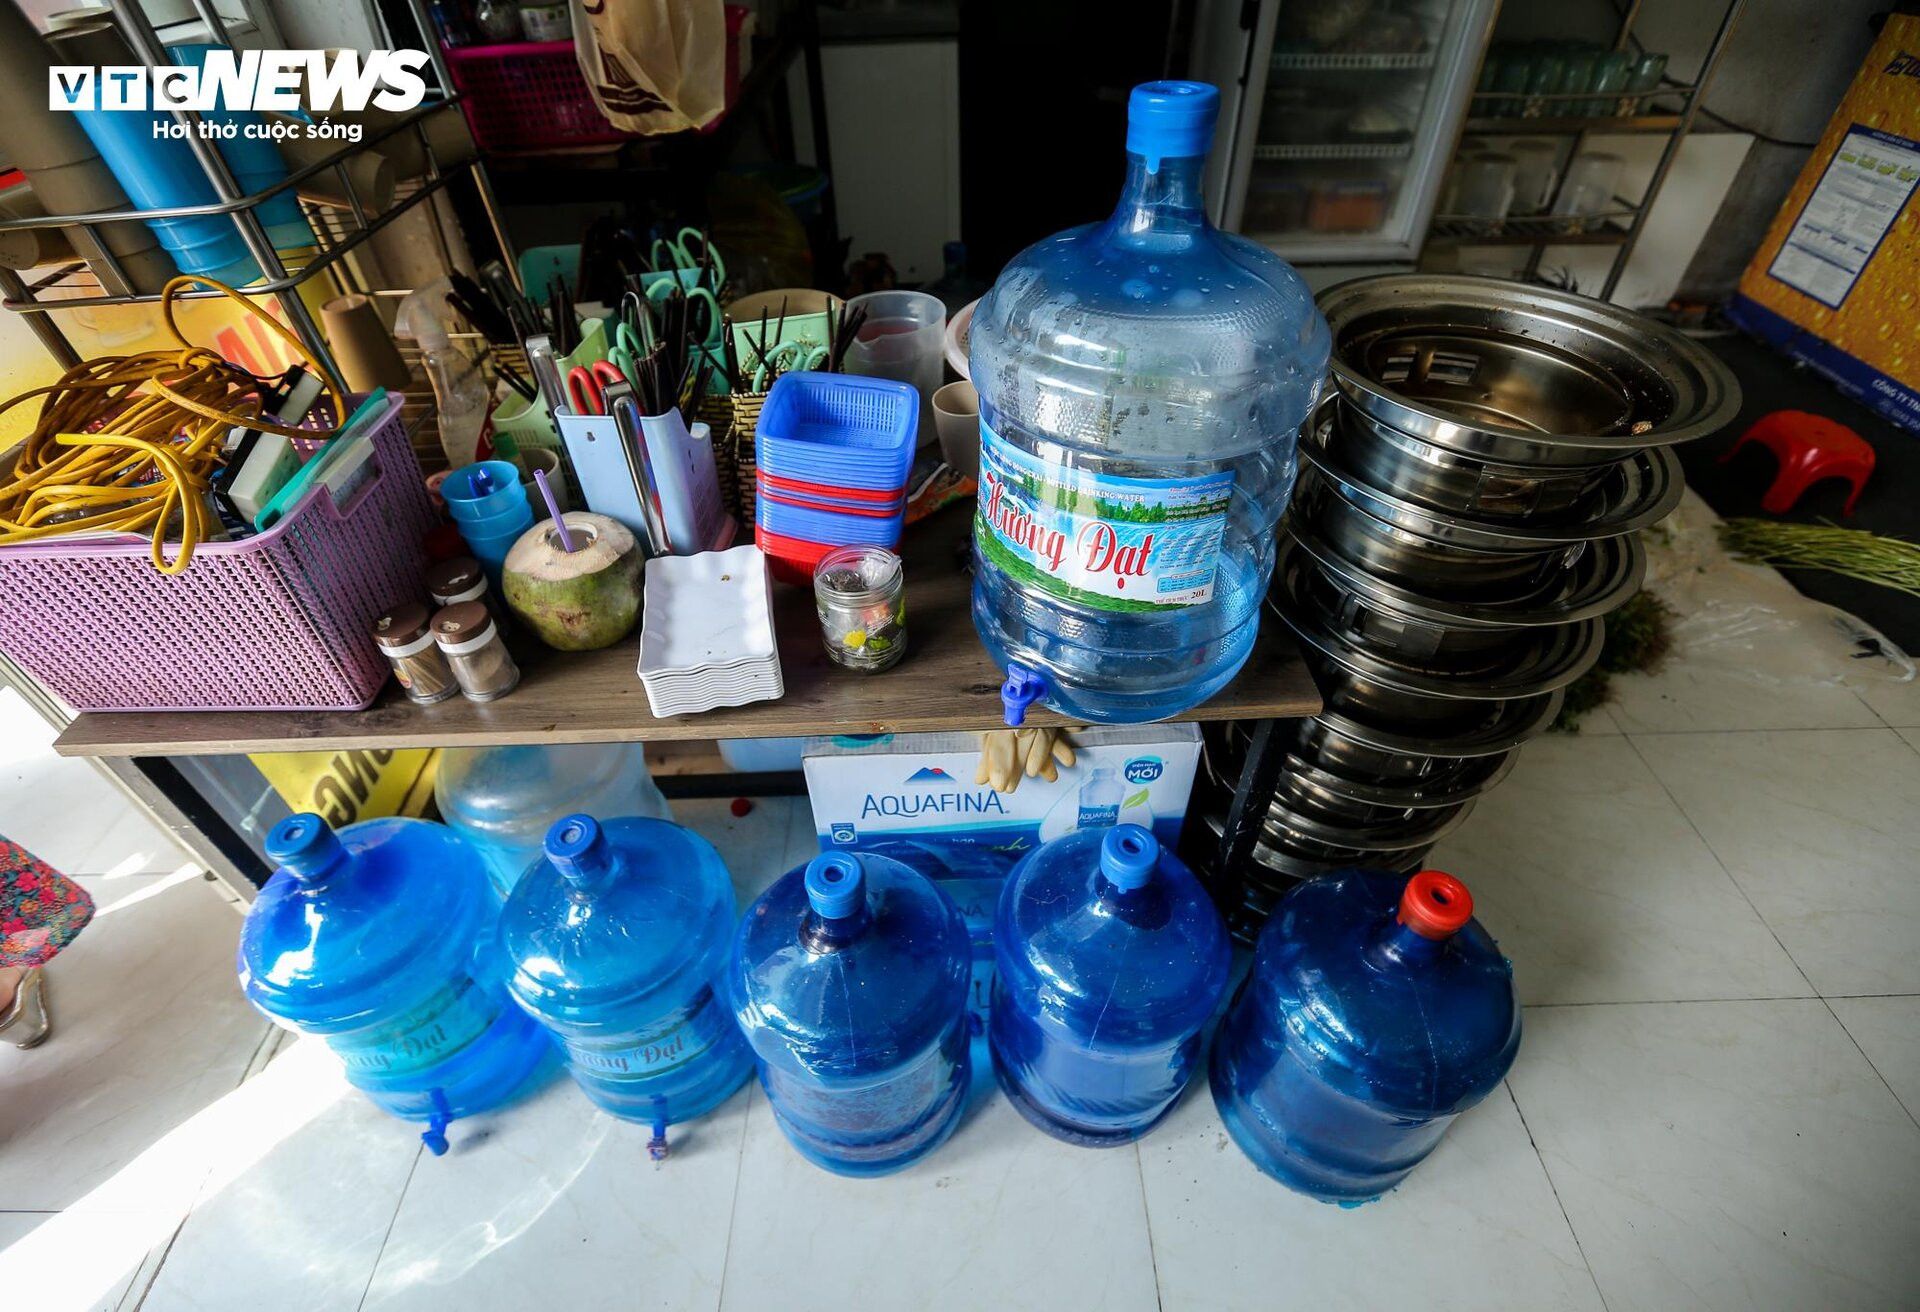 KĐT Thanh Hà khát nước sạch: Hàng quán tạm nghỉ bán, mua nước đóng bình cầm cự - 8